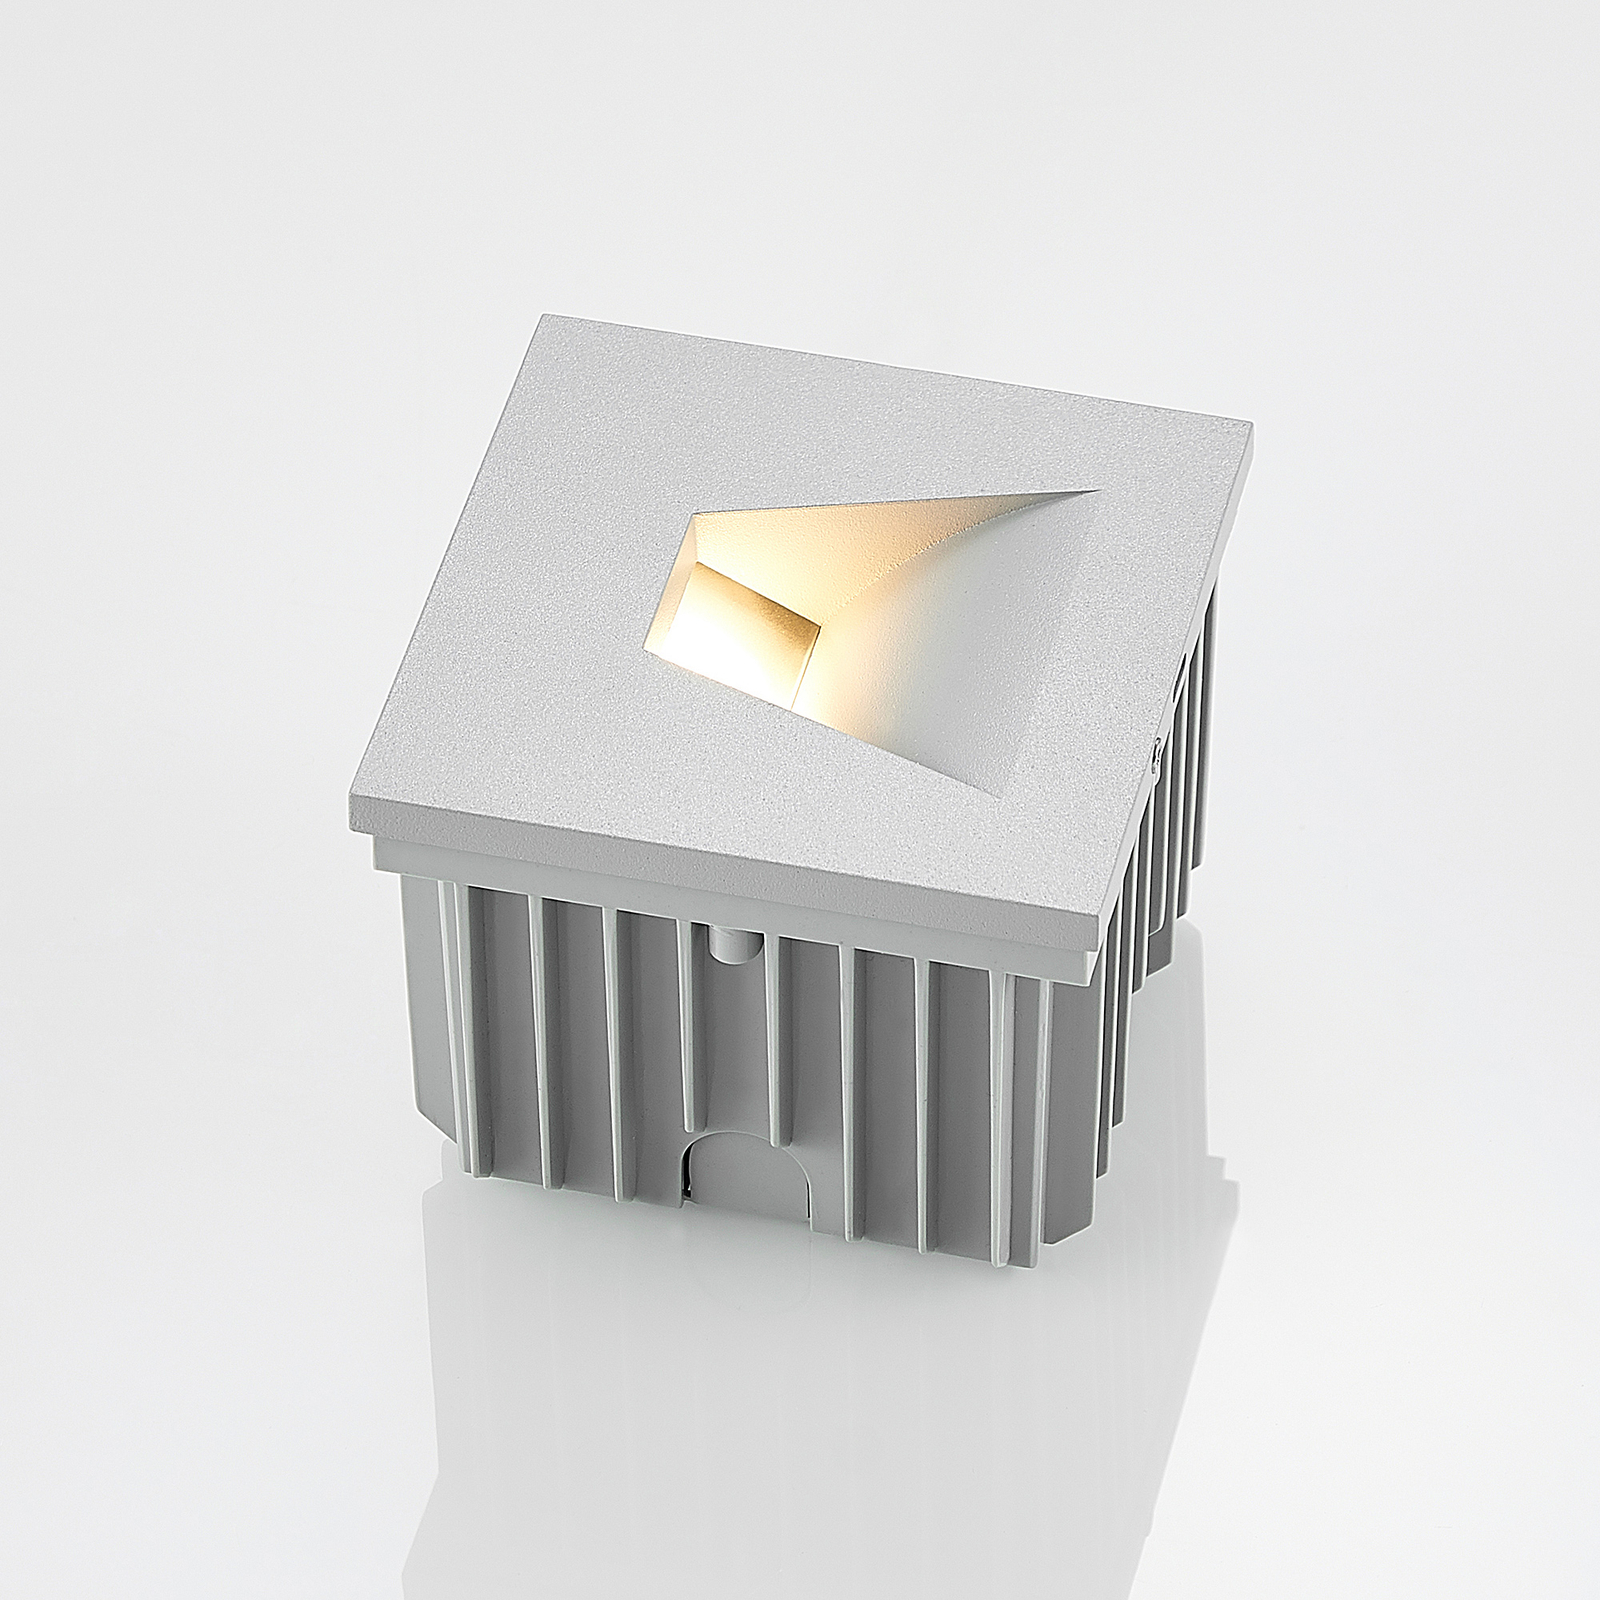 Arcchio Lasca stenska svetilka za vgradnjo, srebrna, G9, IP65